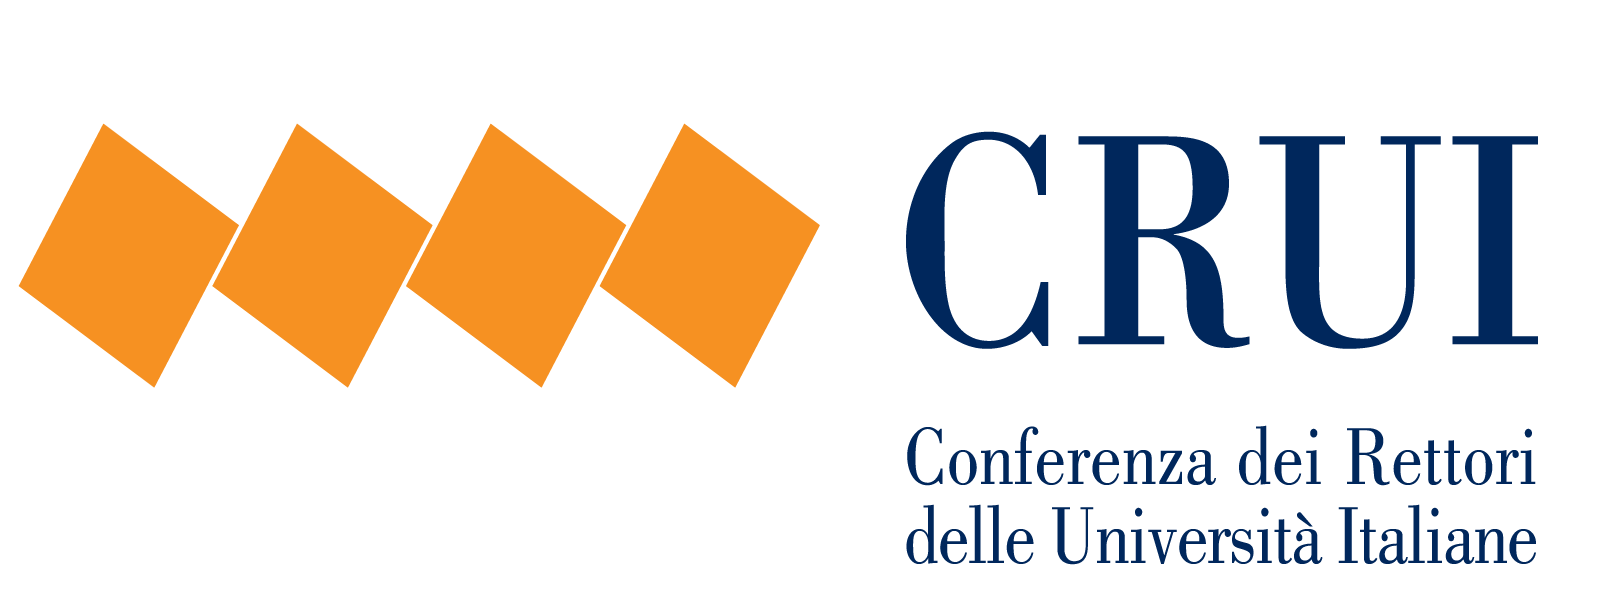 Conferenza dei Rettori delle Università Italiane